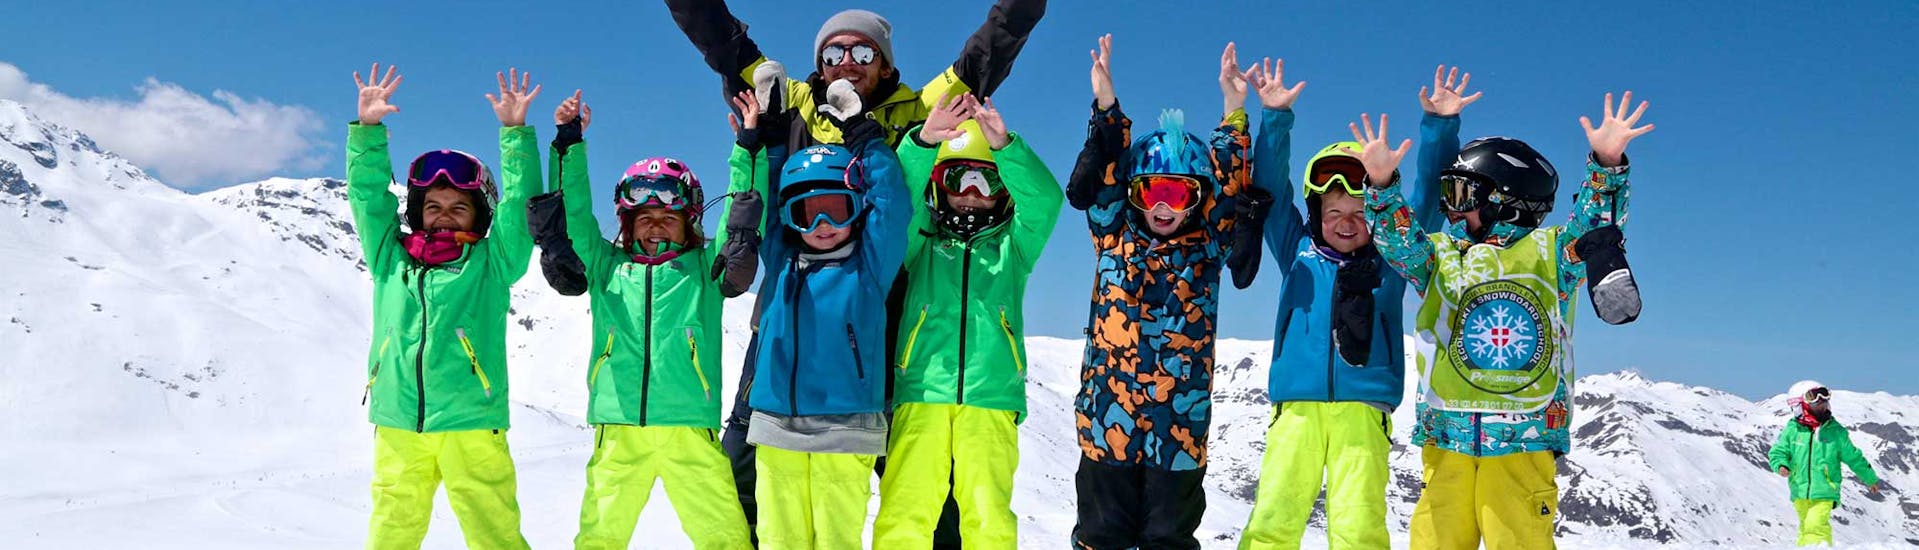 Les jeunes skieurs ont passé un excellent moment avec Prosneige Alpe d'Huez durant un cours de ski "Max 8" pour enfants. 